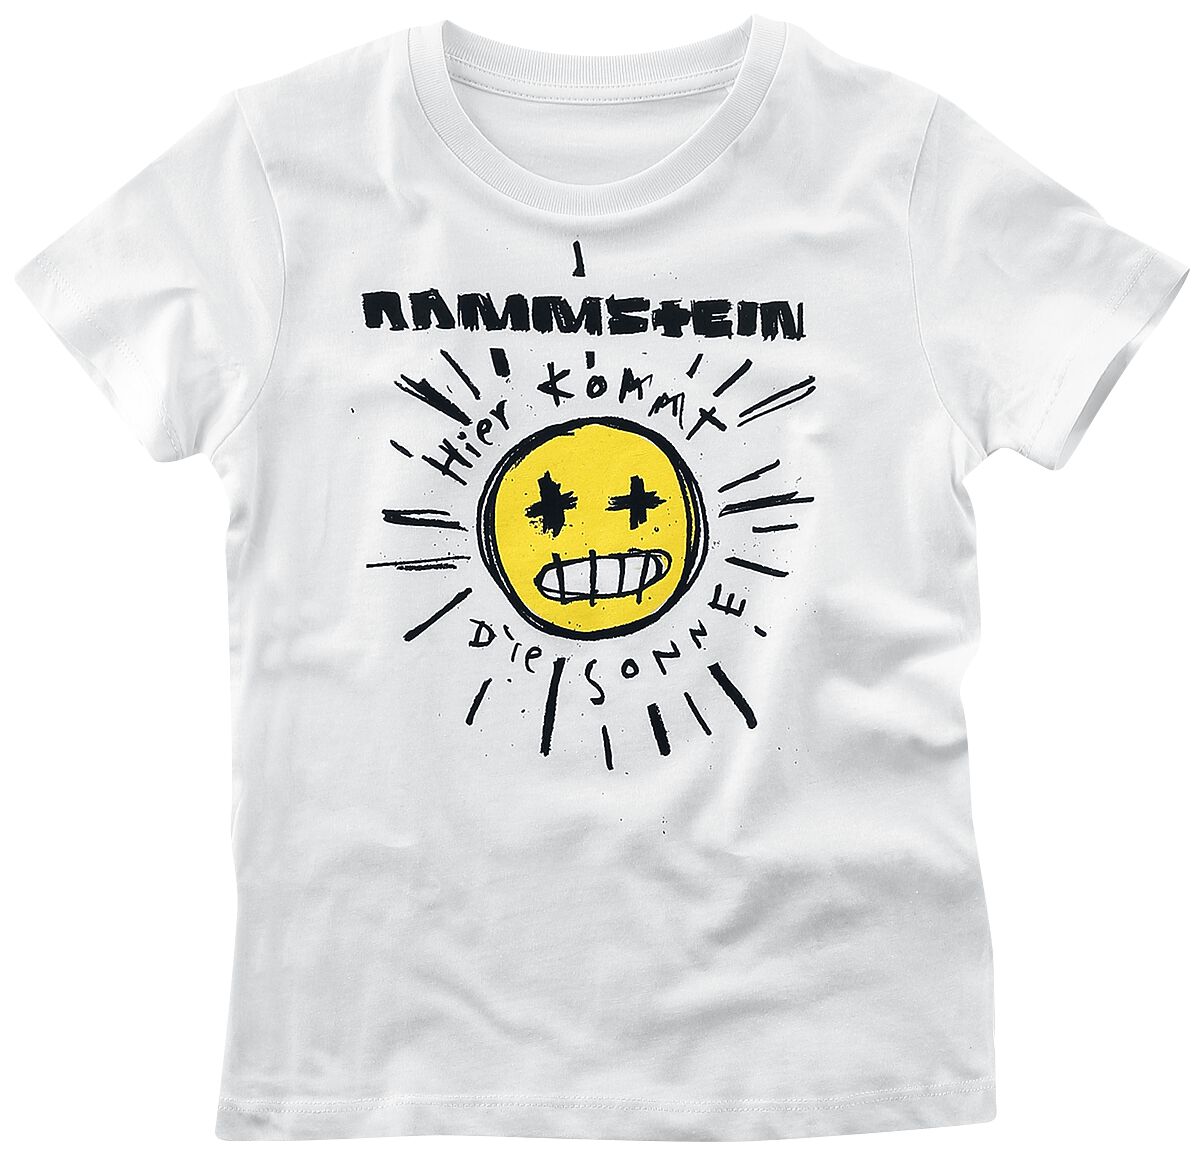 Rammstein - Kids - Sonne - T-Shirt - weiß